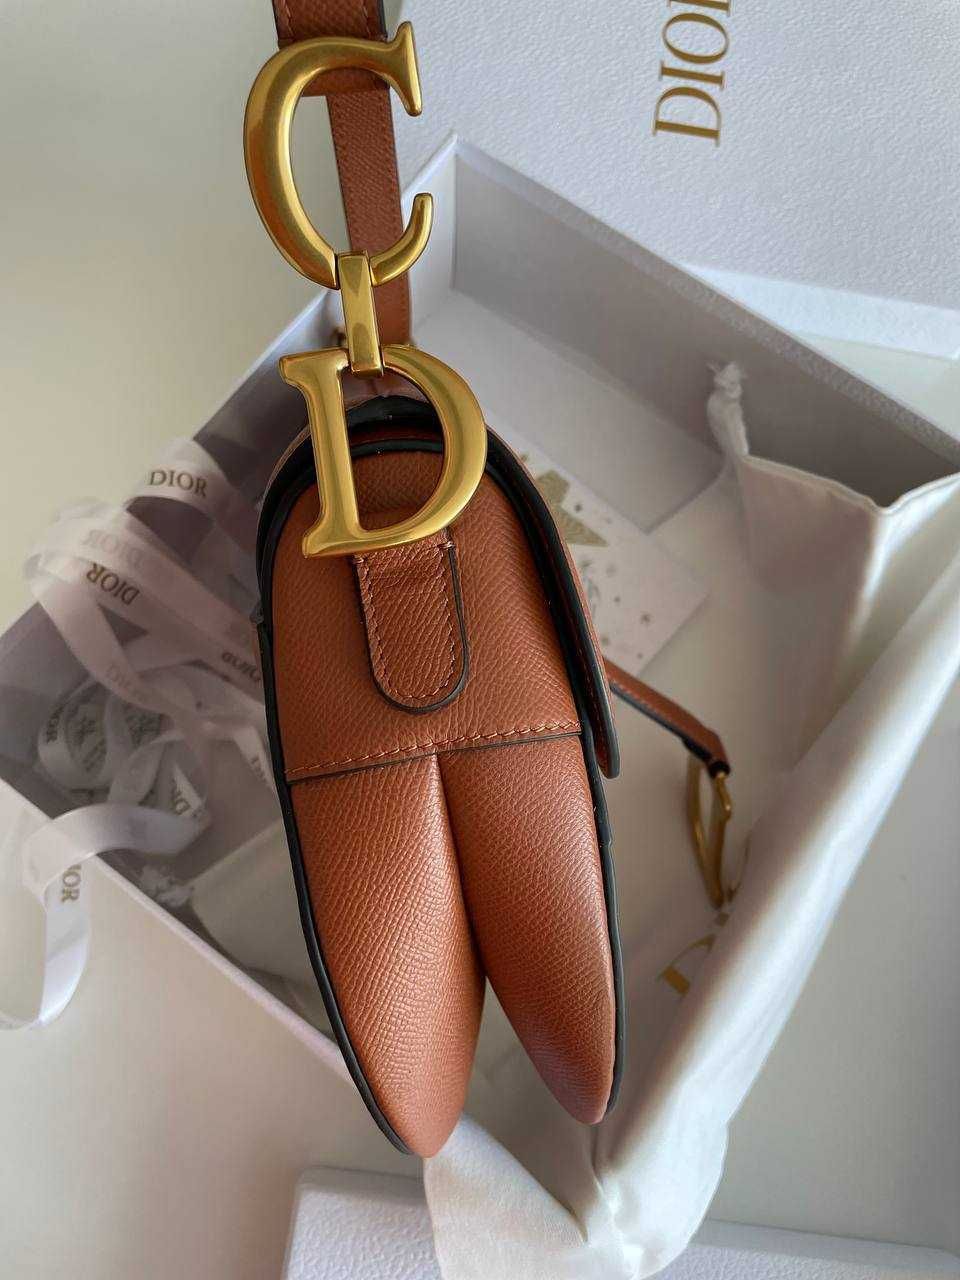 Оригинальная сумочка от Dior Saddle Bag